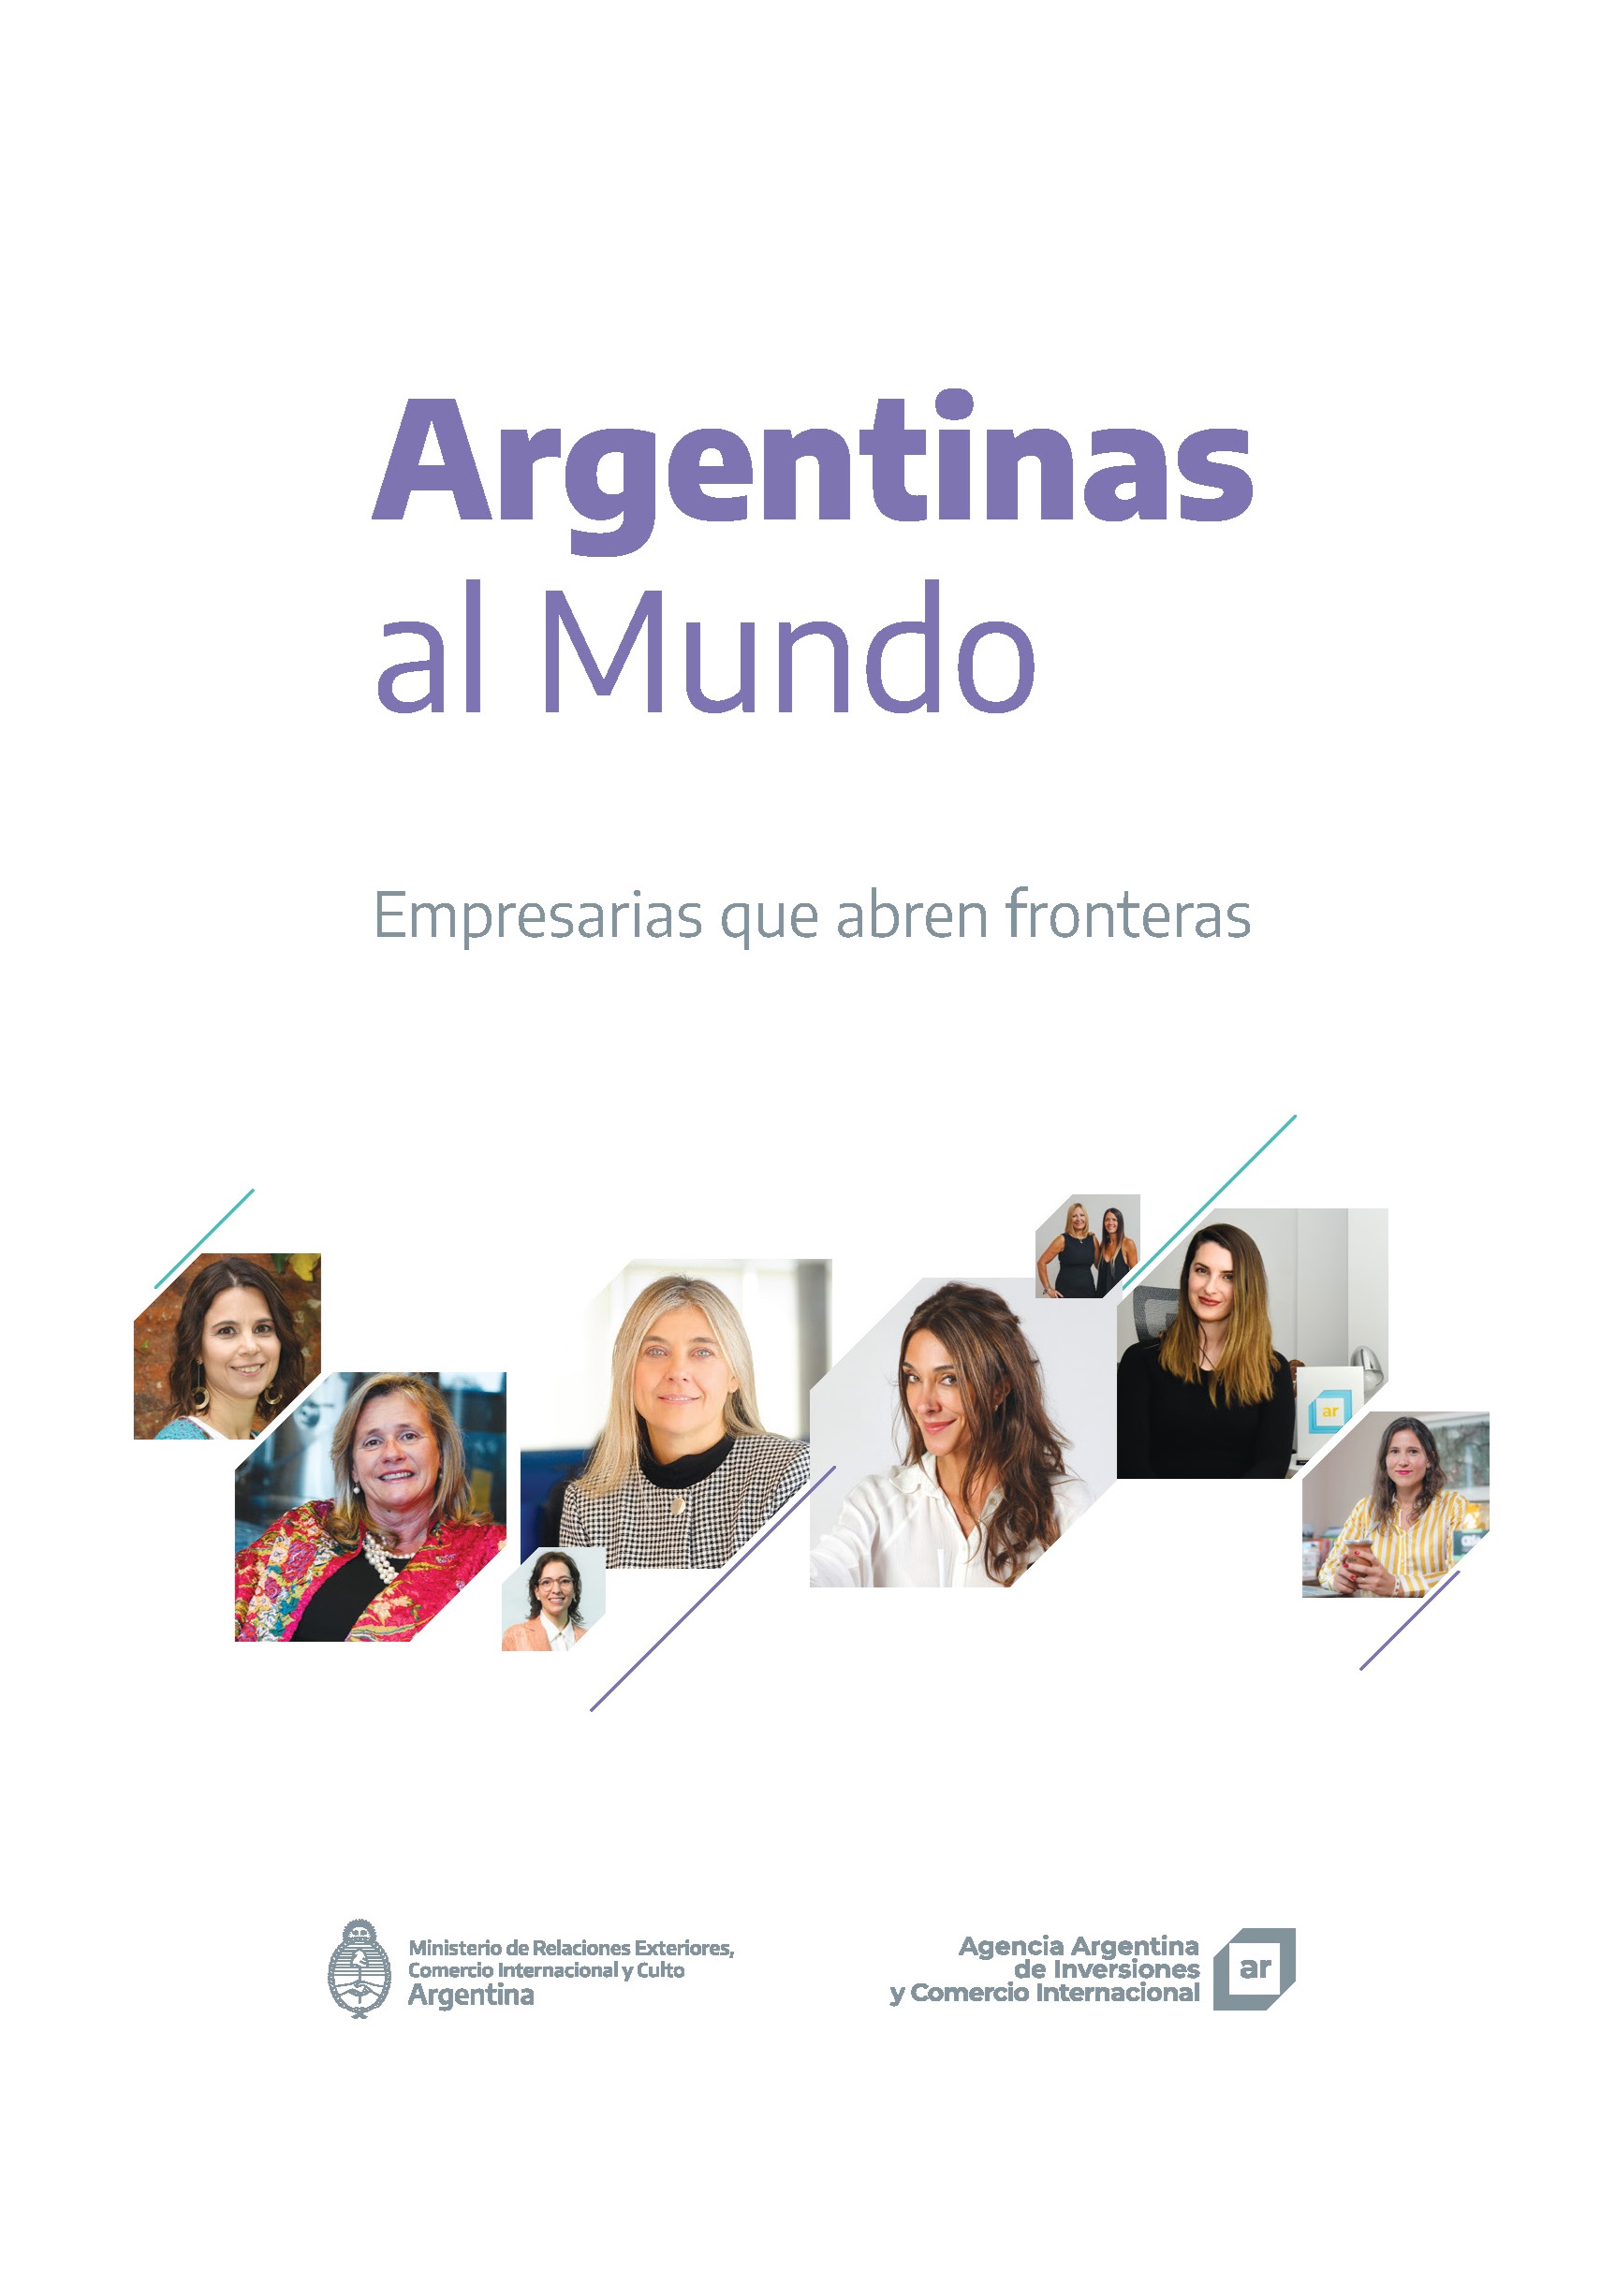 https://www.inversionycomercio.ar/images/publicaciones/Argentinas al Mundo. Empresarias que abren fronteras